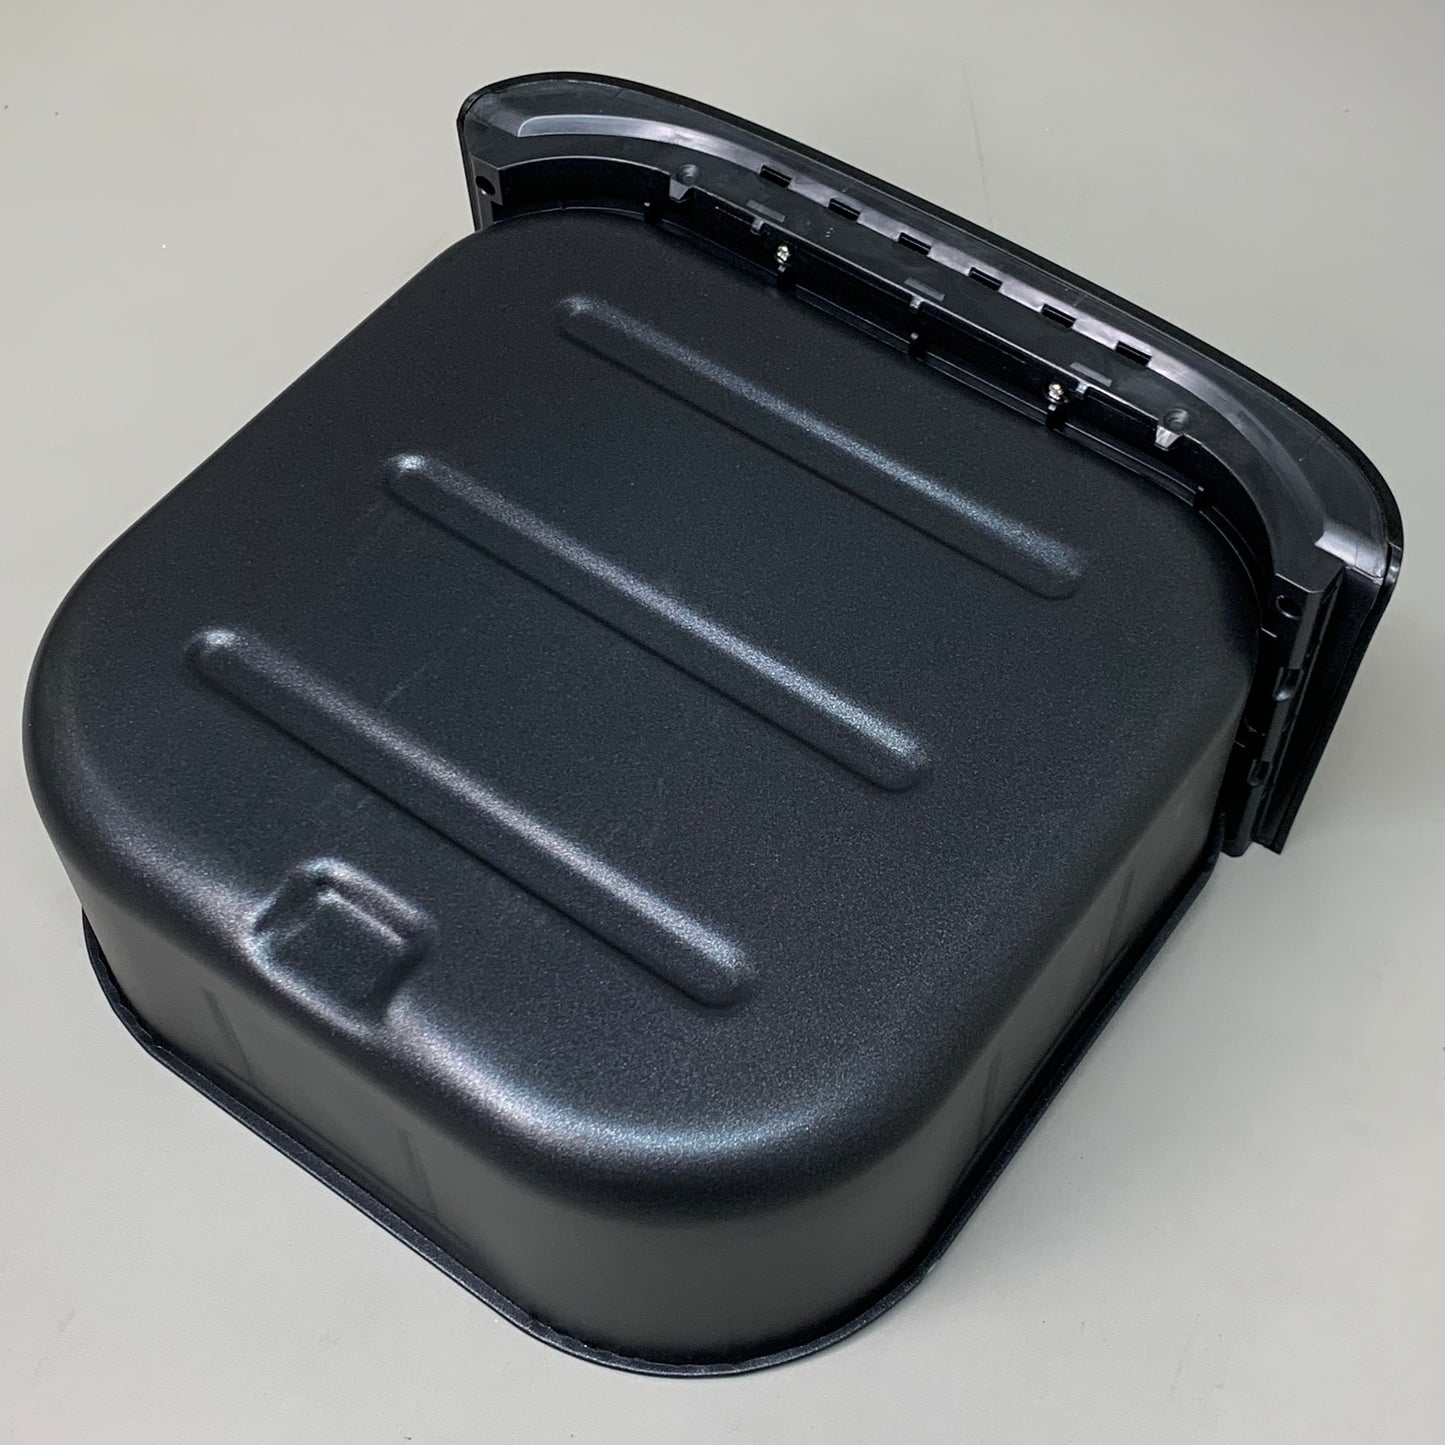 COSORI Gen 2-Premium 5.8 Qt Smart Air Fryer Black 1700W CS168-AF (New)